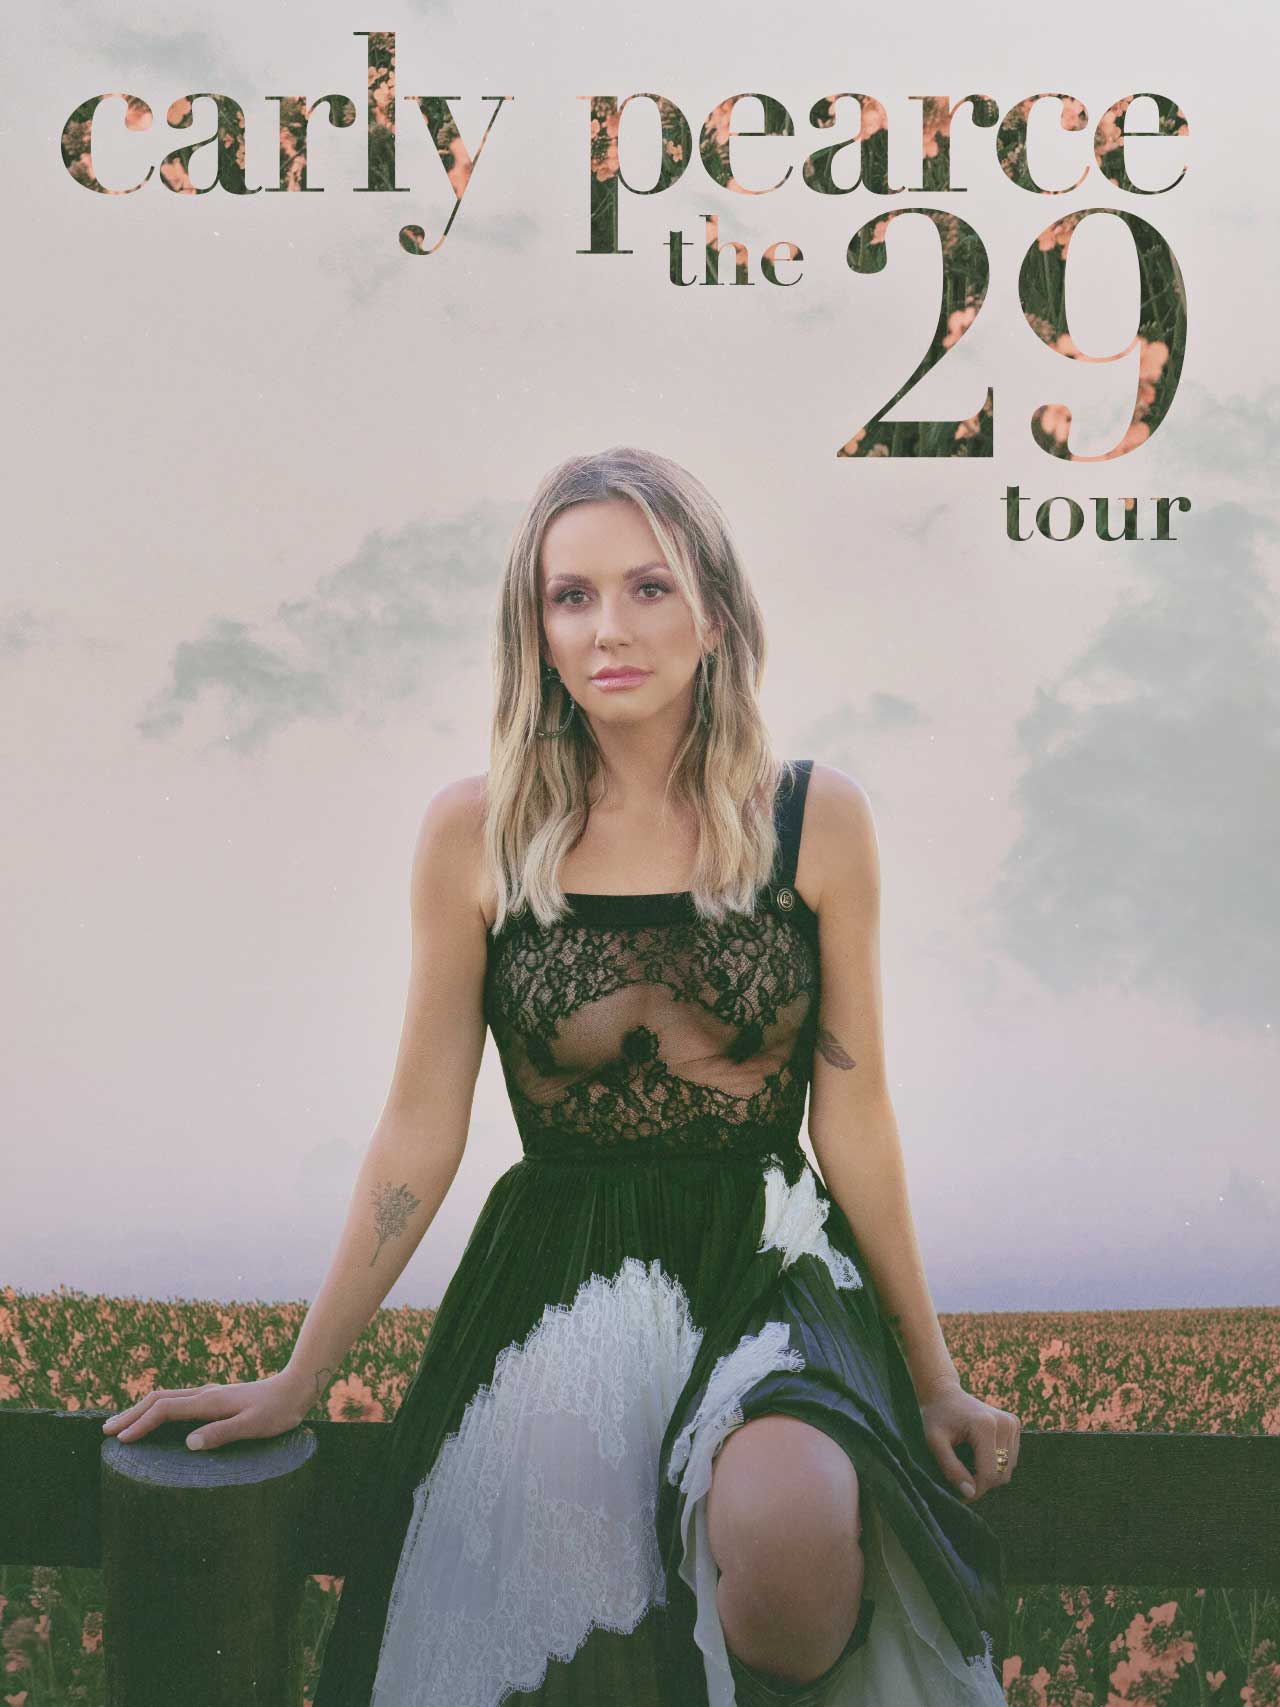 The 29 Tour